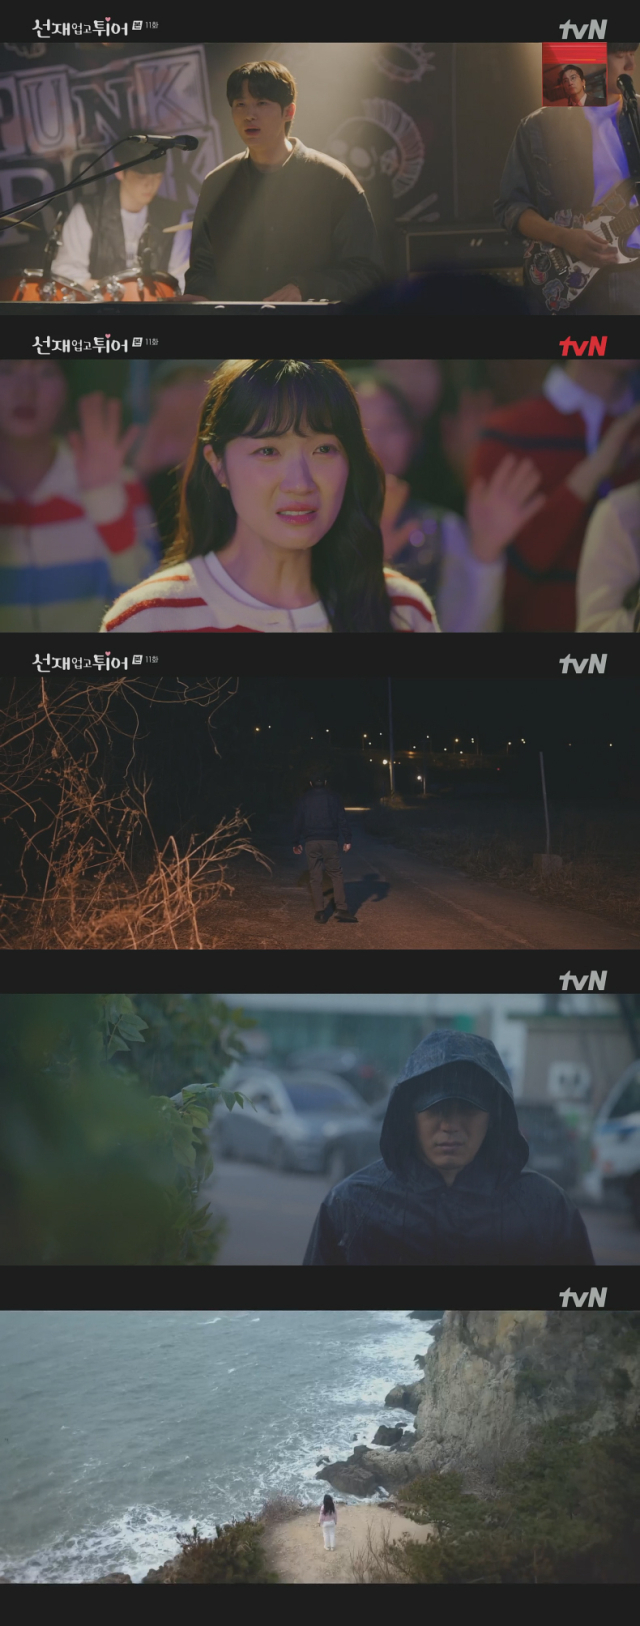 케이블채널 tvN 월화드라마 '선재 업고 튀어'./케이블채널 tvN 월화드라마 '선재 업고 튀어' 방송 캡처